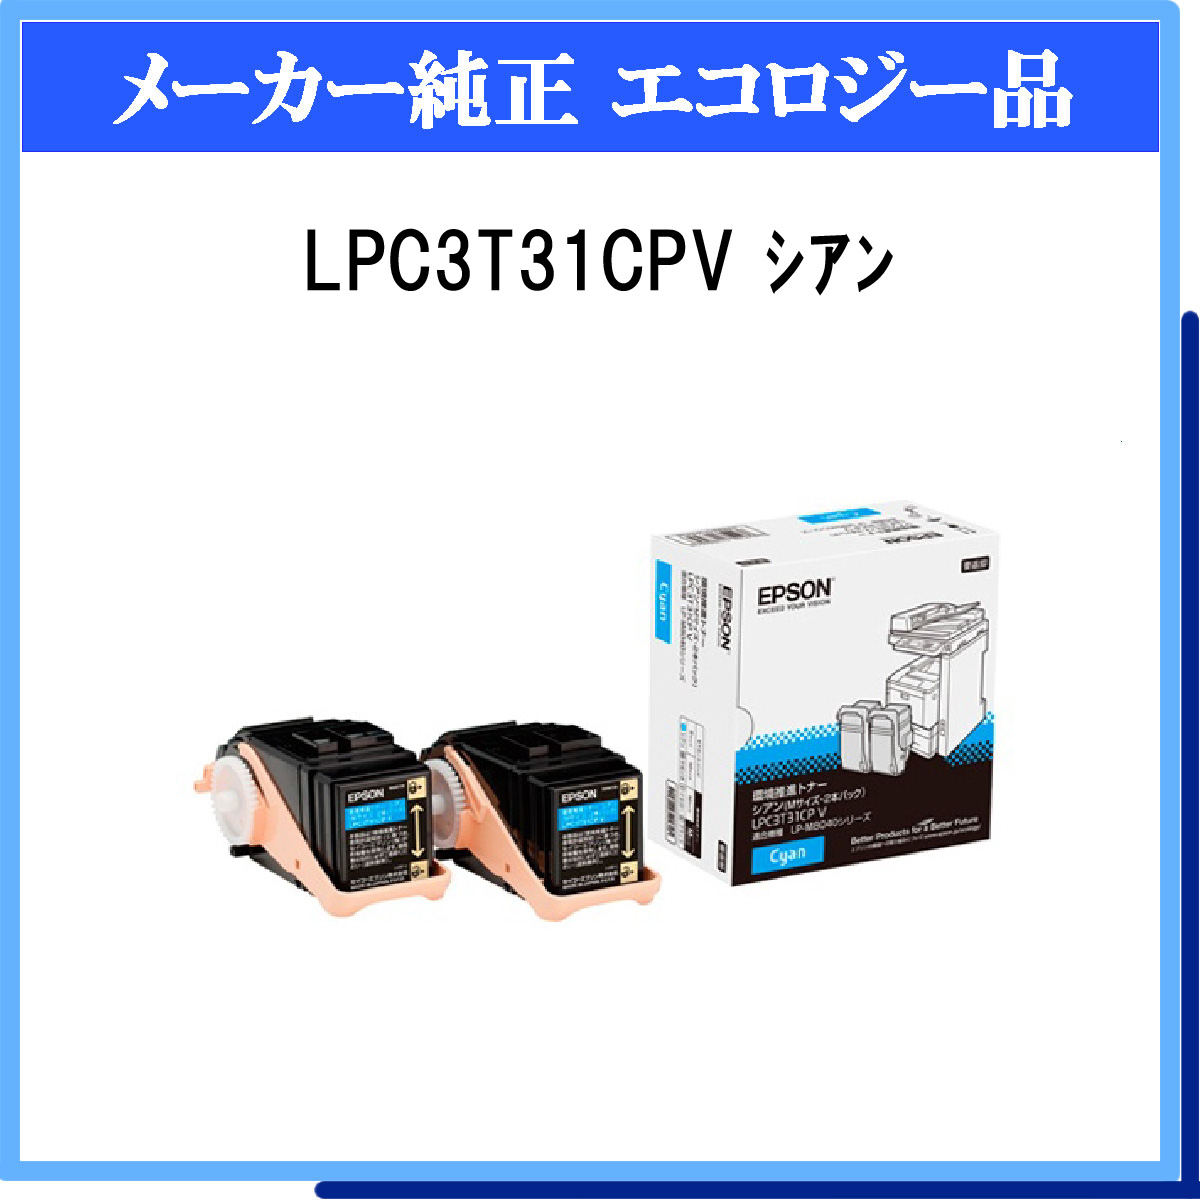 LPC3T31CPV (2P) 環境推進ﾄﾅｰ